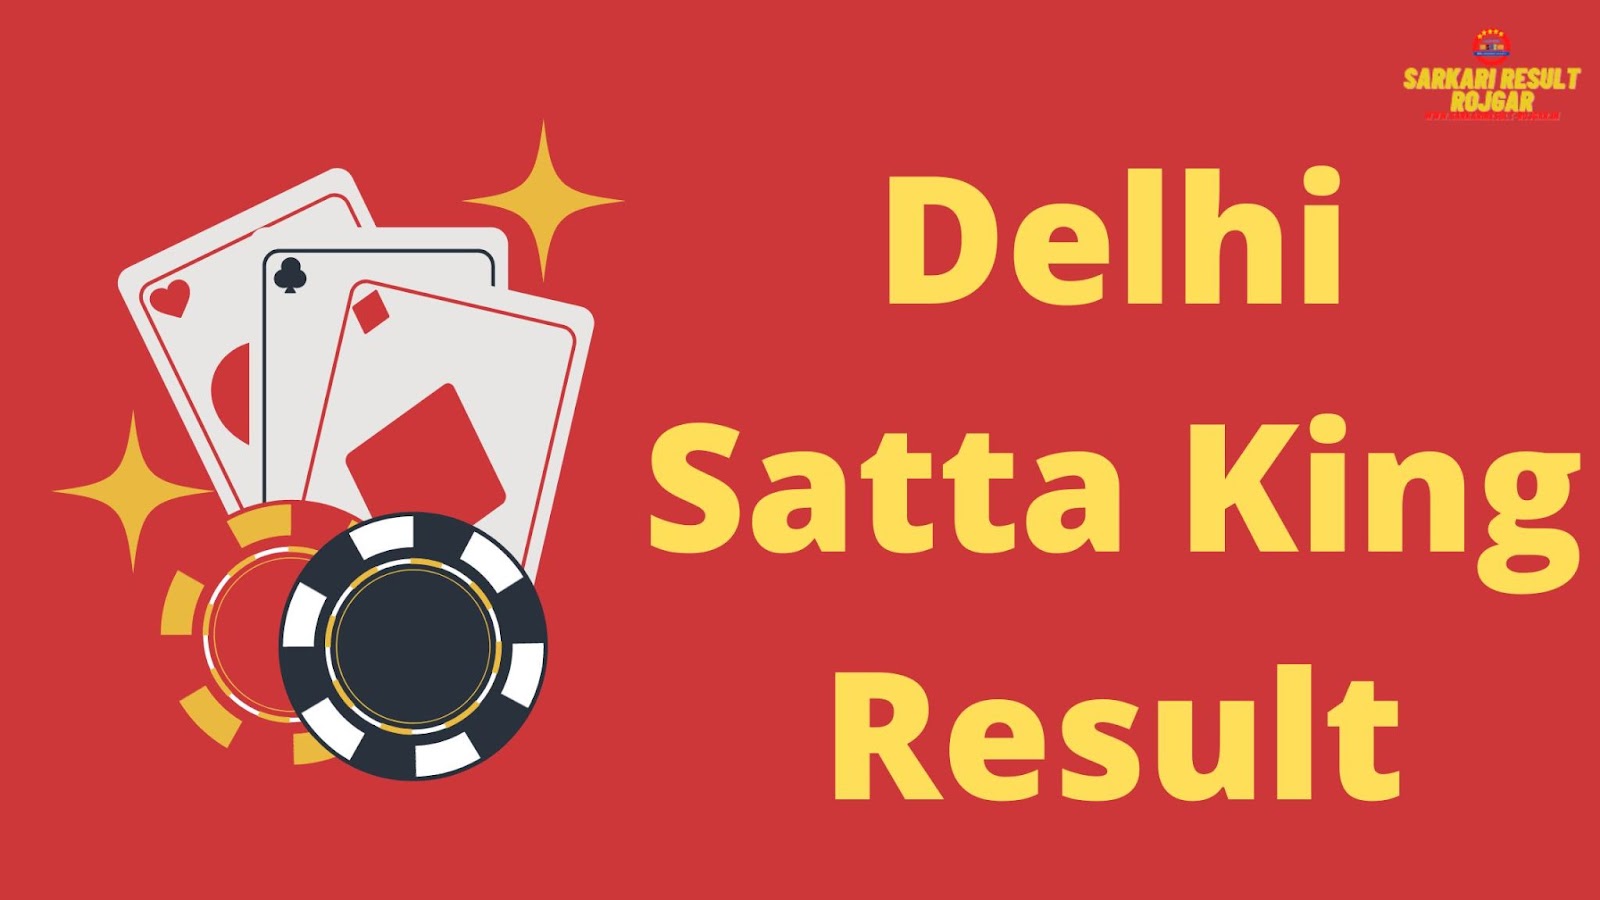 Delhi Satta King Results